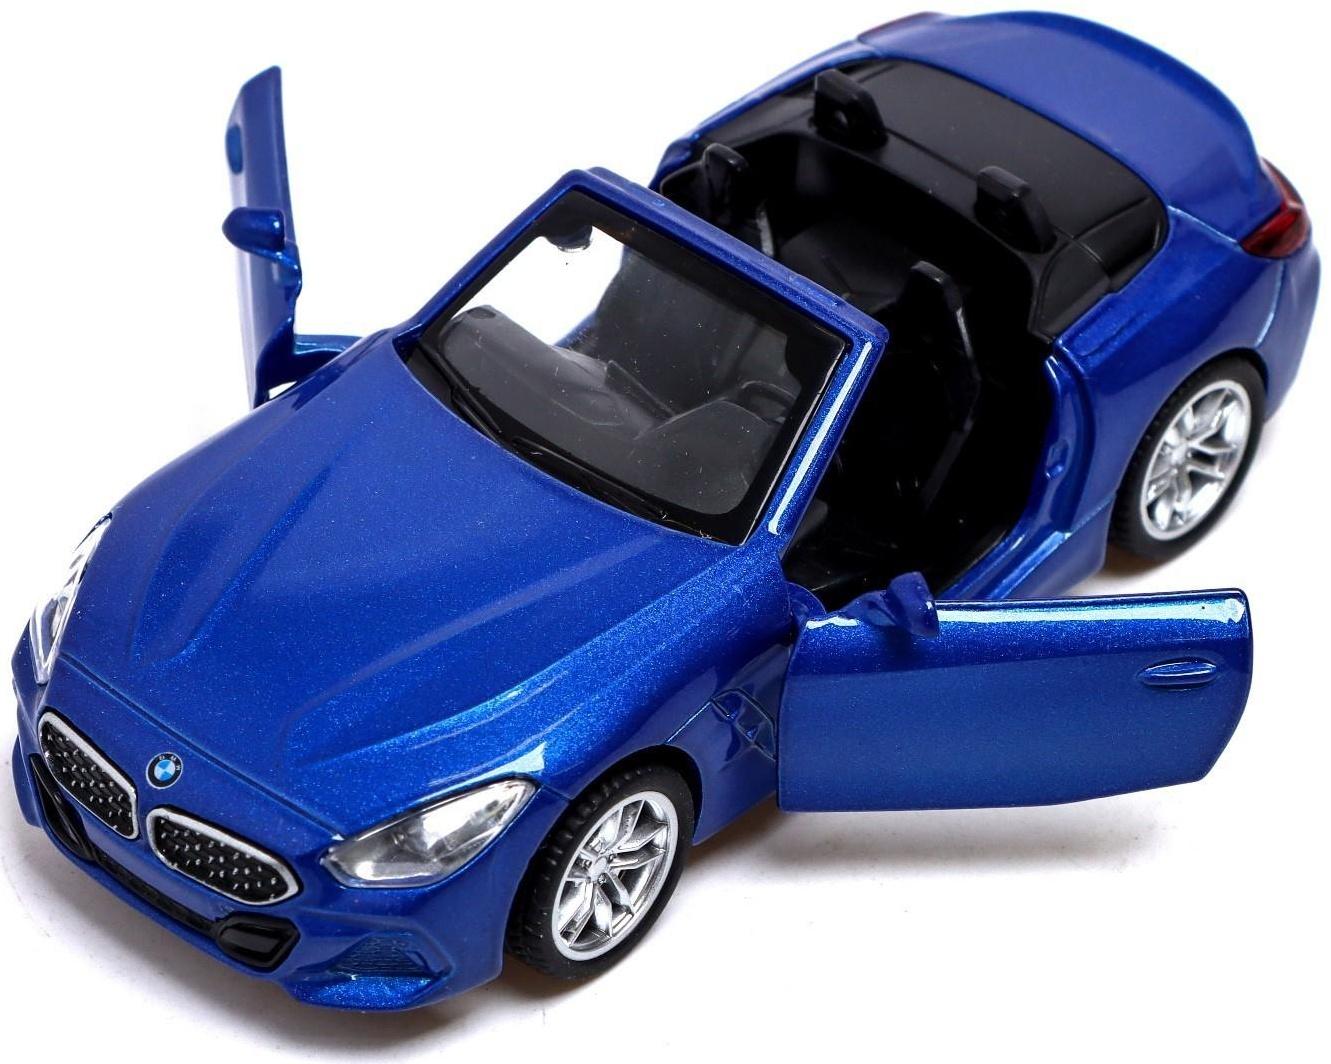 Машина металлическая BMW Z4M40i, 1:38, инерция, открываются двери, цвет синий